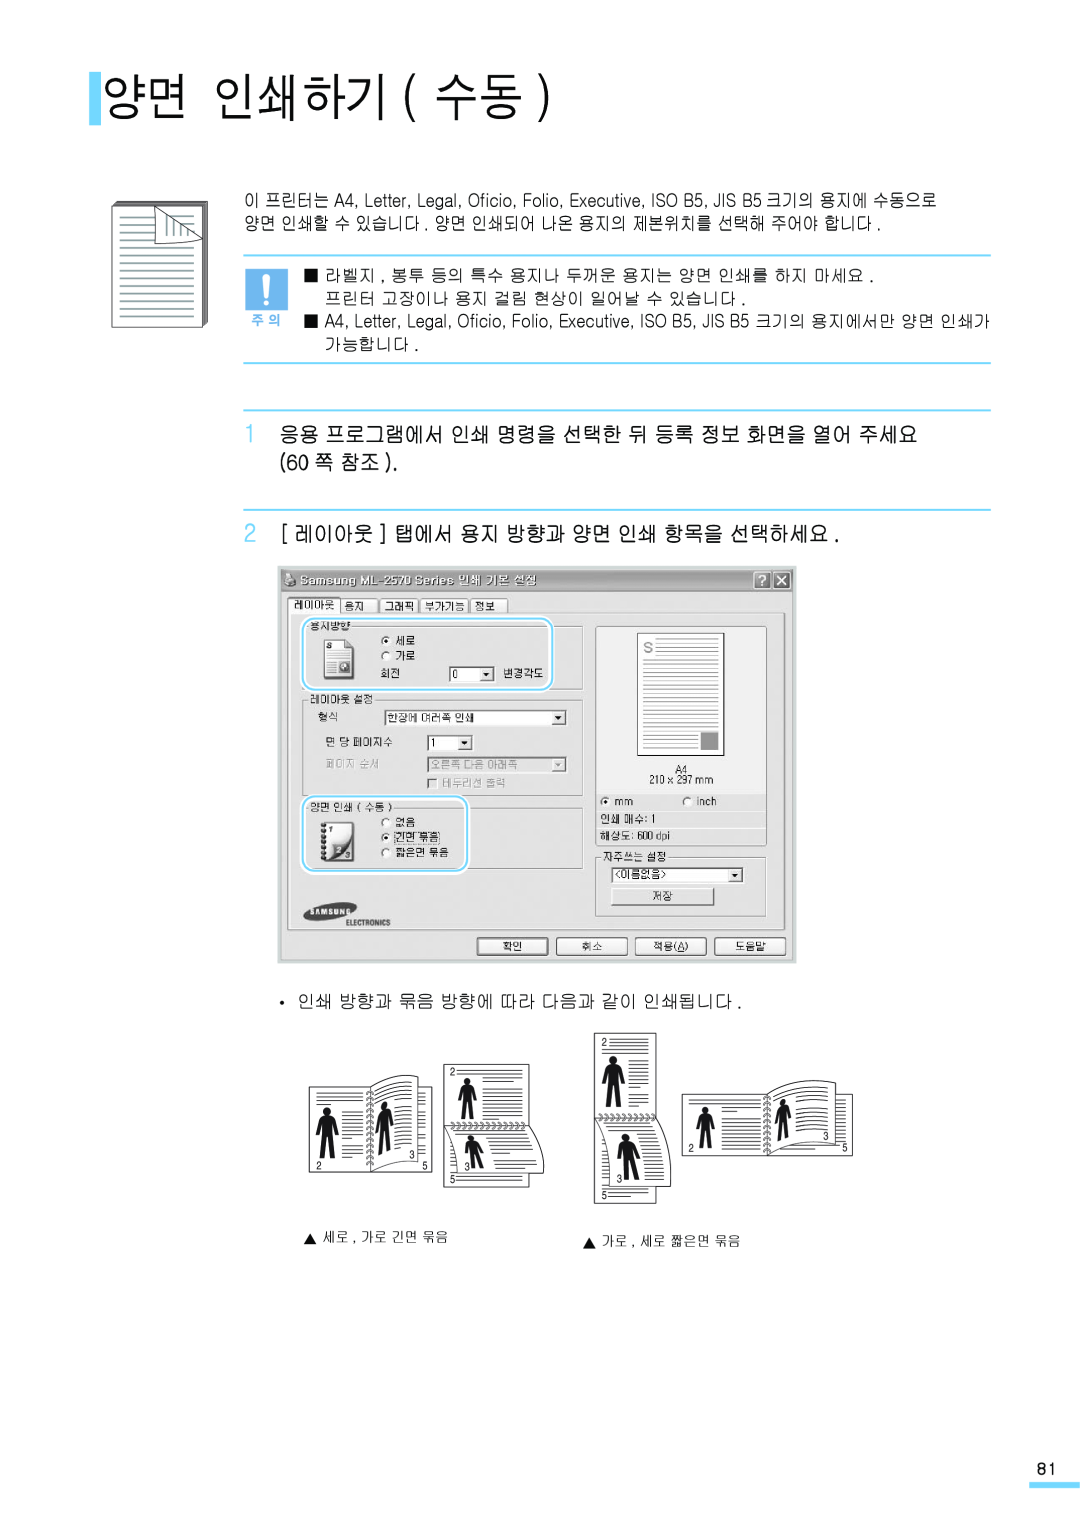 Samsung ML-2571N manual 양면 인쇄하기 수동, 1 응용 프로그램에서 인쇄 명령을 선택한 뒤 등록 정보 화면을 열어 주세요 60 쪽 참조, 2 레이아웃 탭에서 용지 방향과 양면 인쇄 항목을 선택하세요 